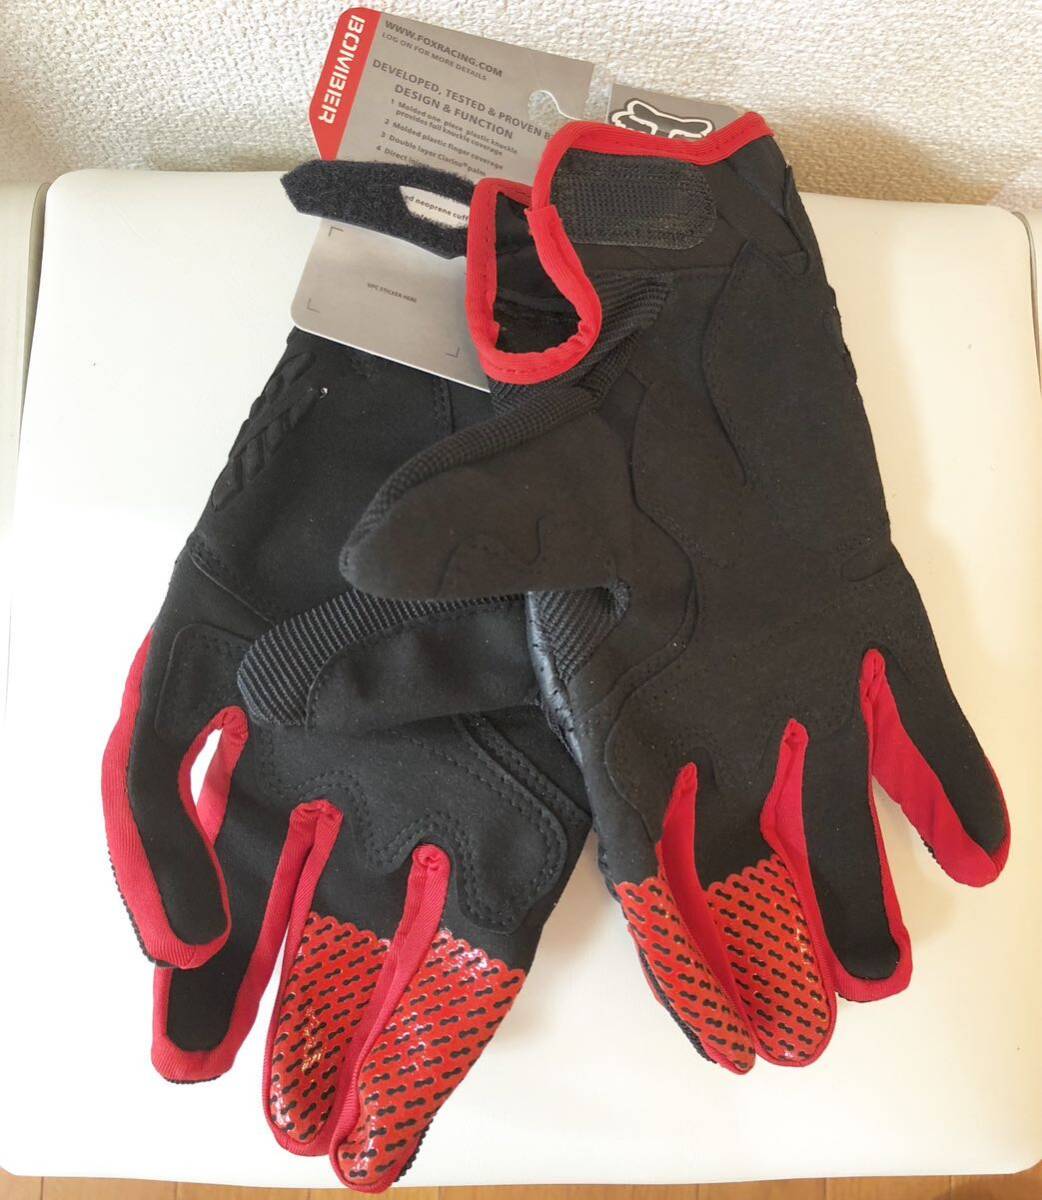 グローブ 手袋 メッシュ バイクグローブ 新品 送料無料 黒赤 XLサイズ